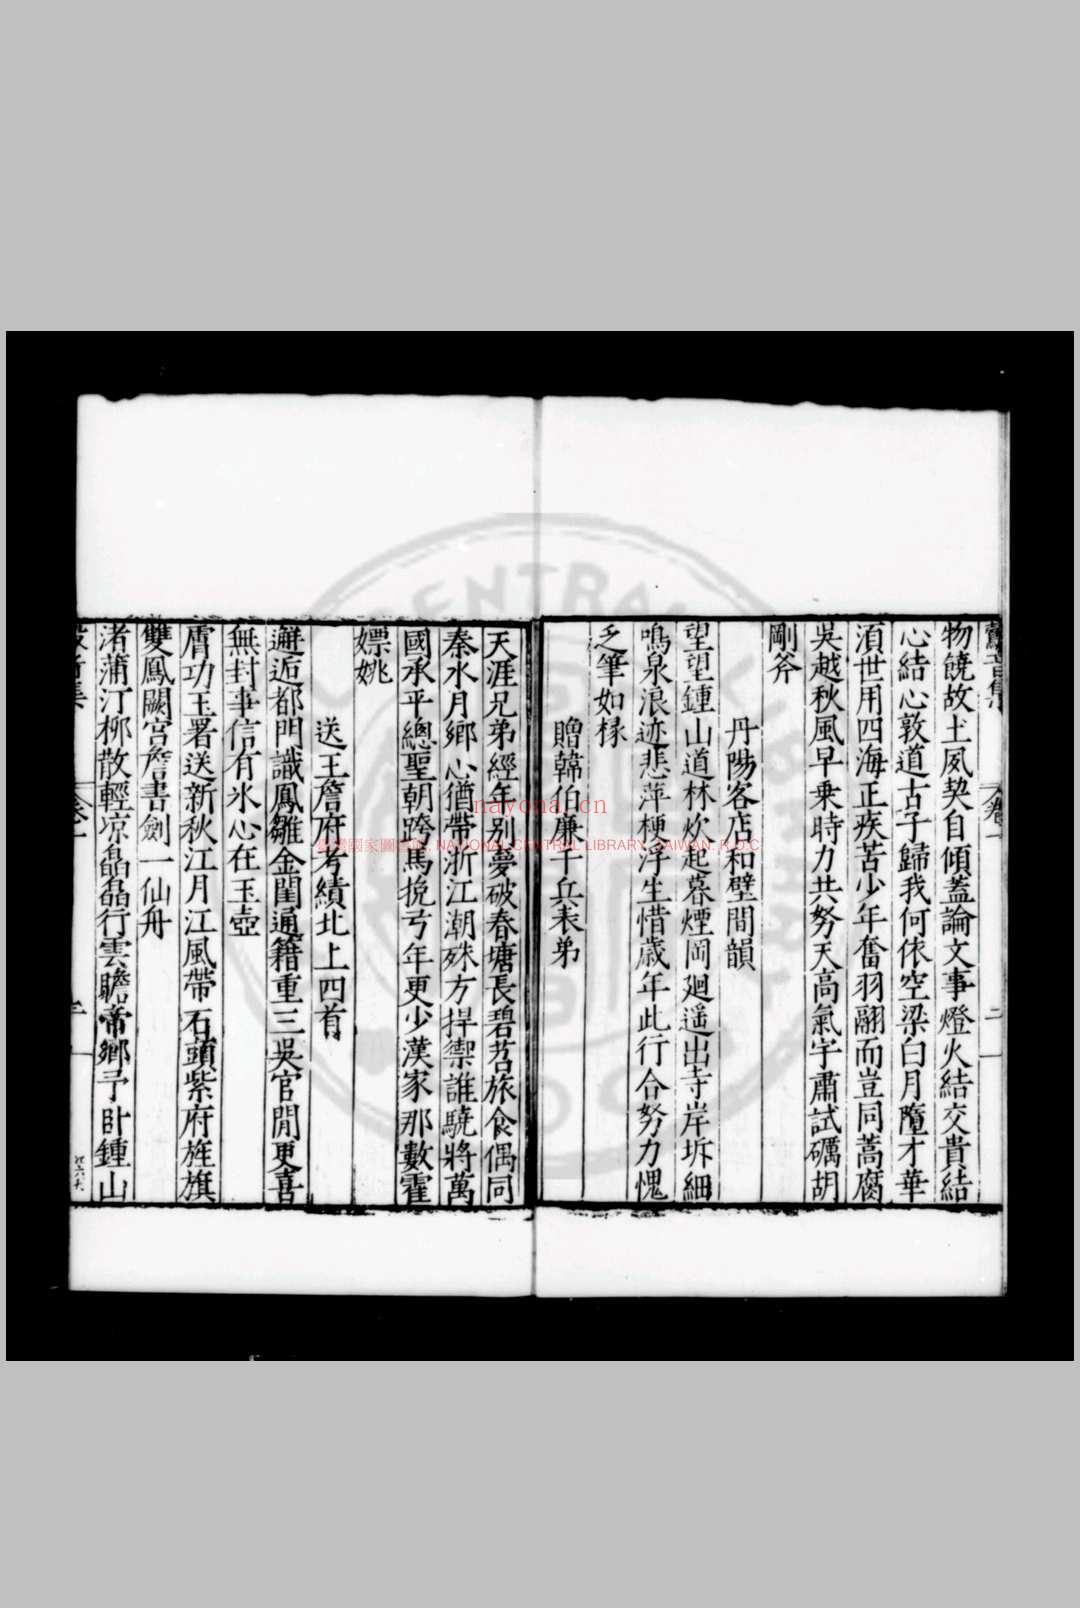 鷇音集 (明)王良枢撰 明嘉靖三十年(1551)吴兴王氏原刊本